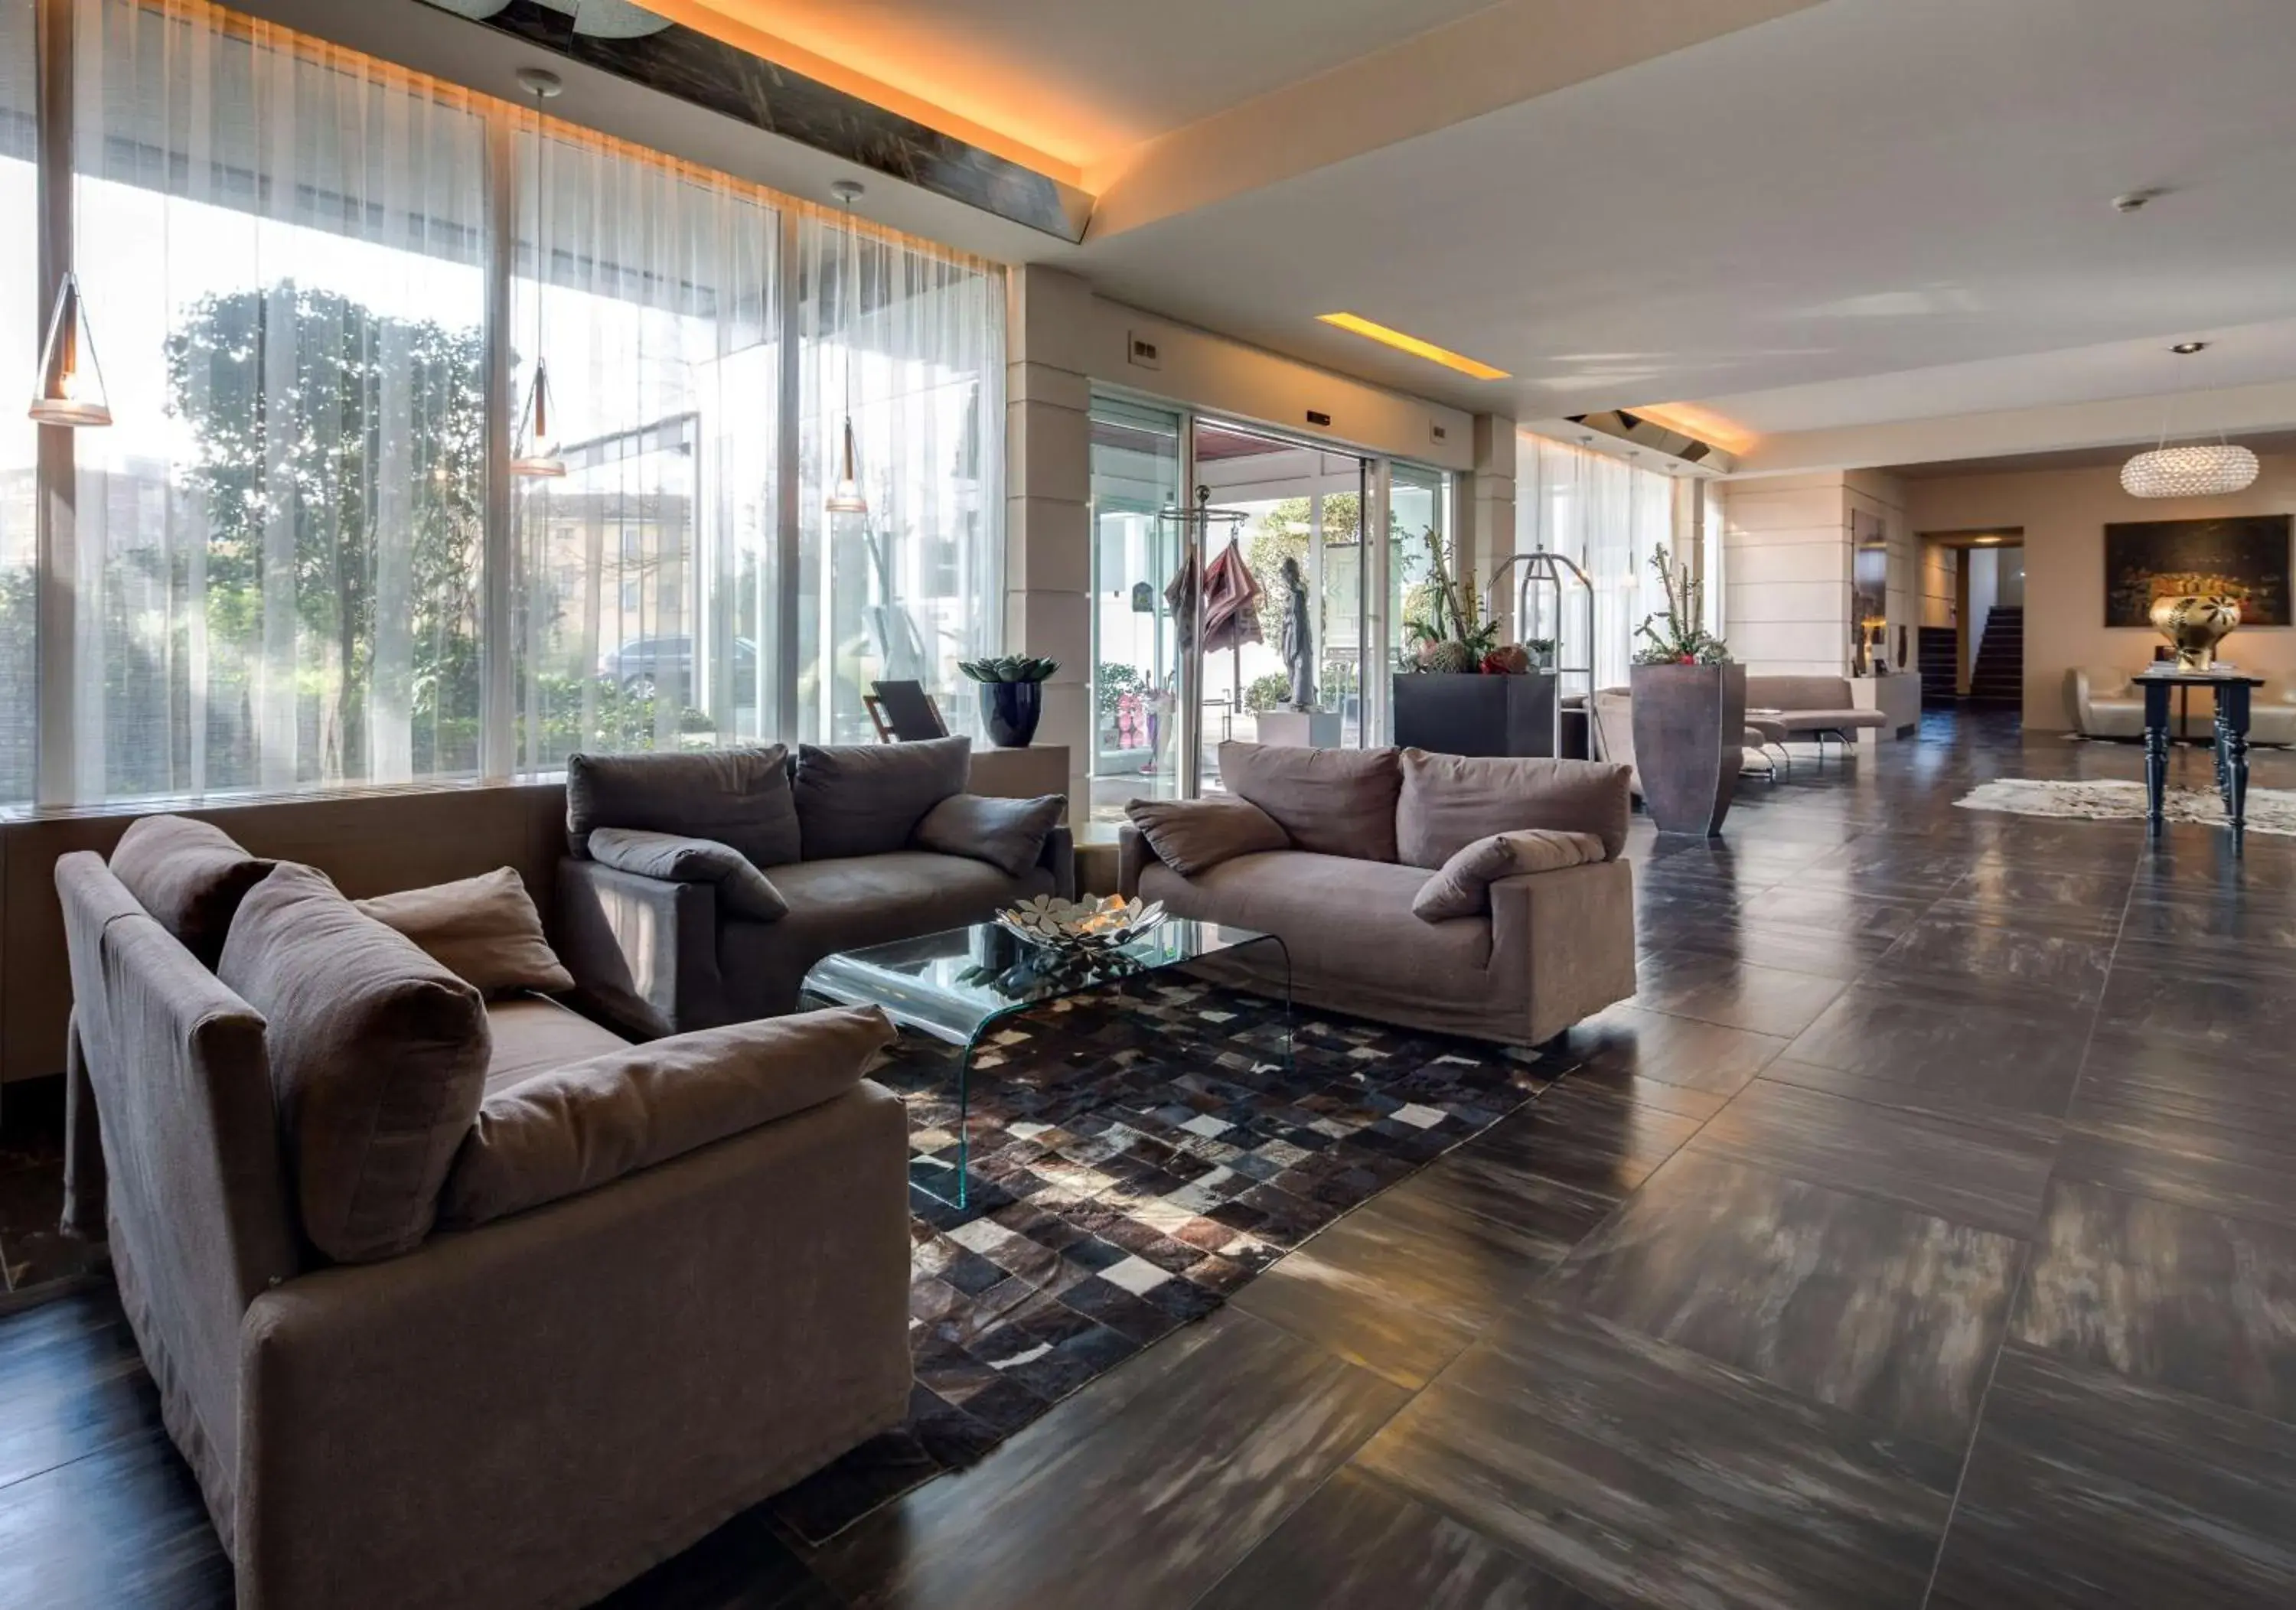 Lobby or reception, Lobby/Reception in Best Western Plus Hotel Farnese